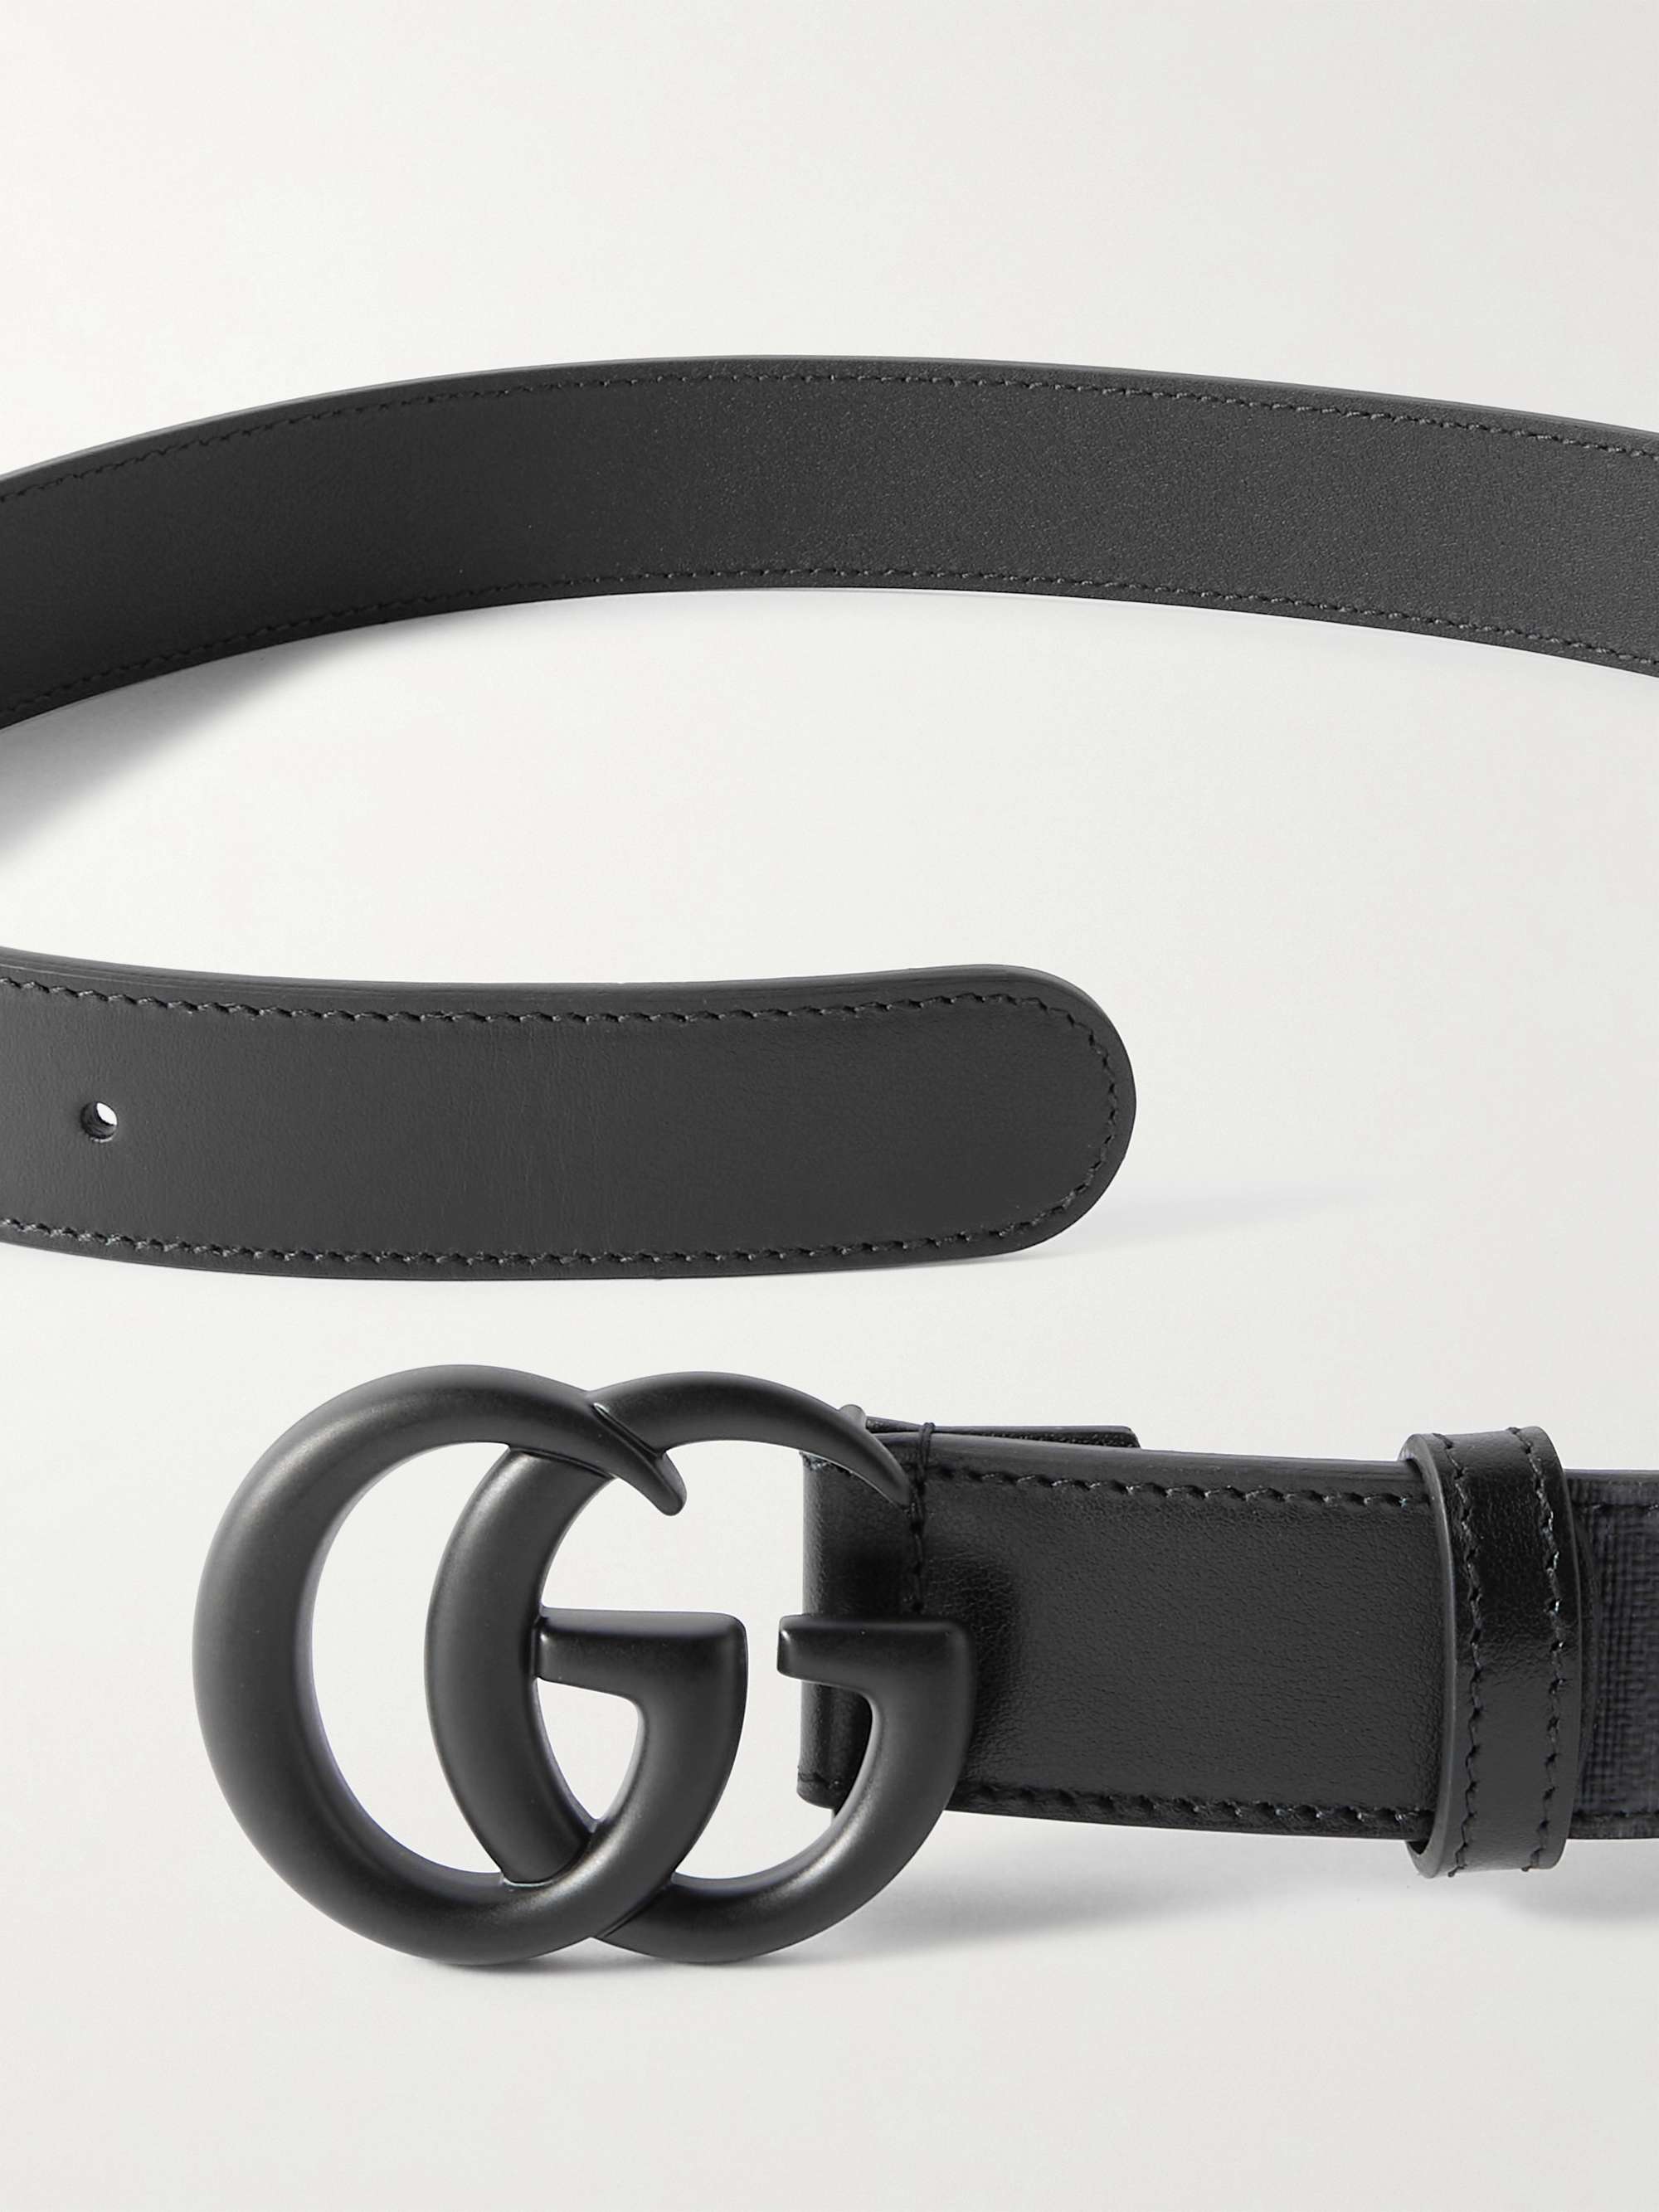 GUCCI 3cm Marmont Leather Belt